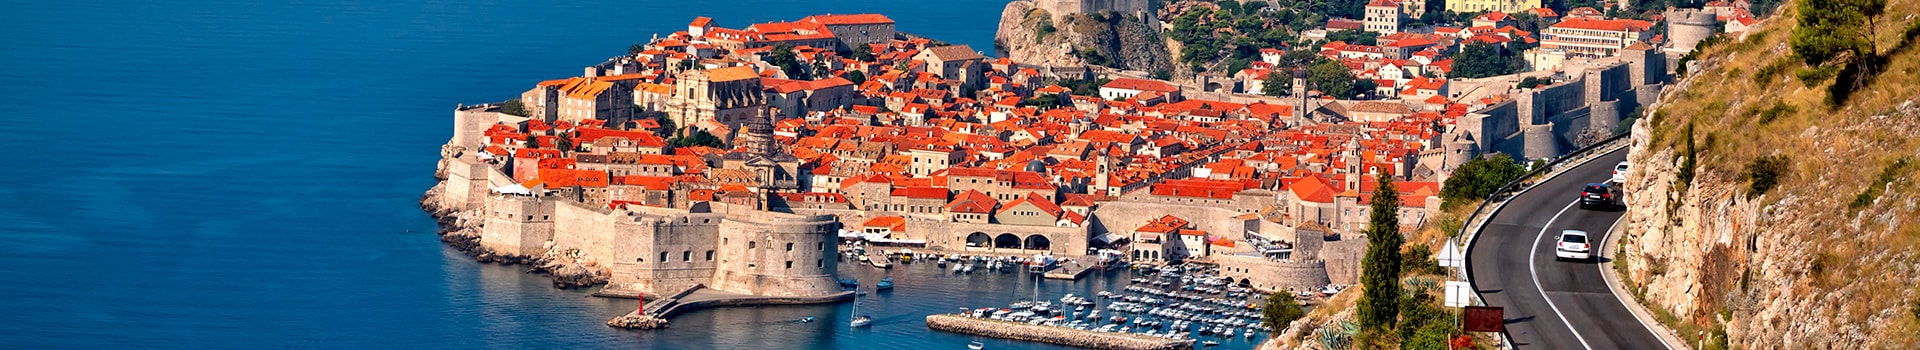 Ámsterdam - Dubrovnik